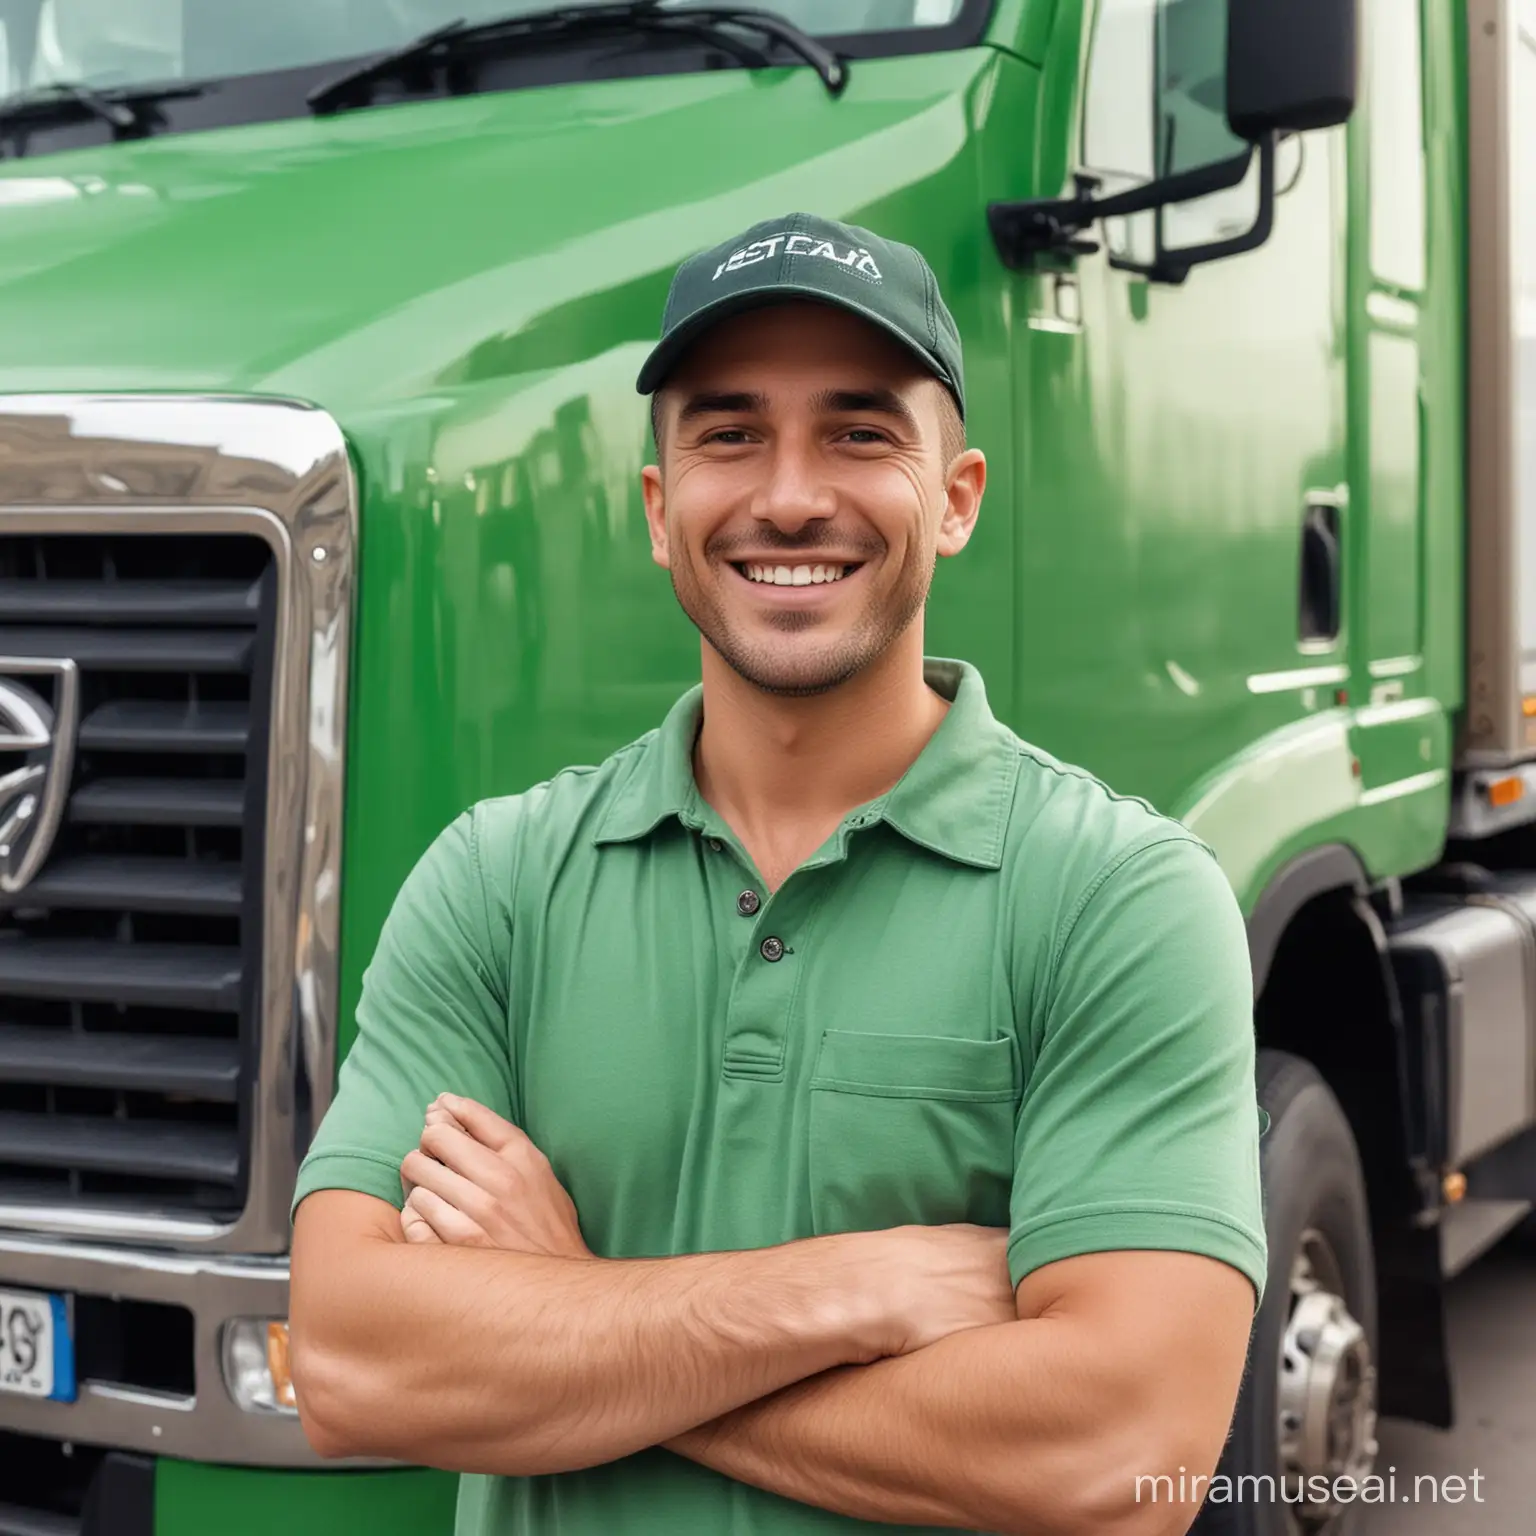 caminhoneiro feliz usando camisa verde, na frente do caminhão